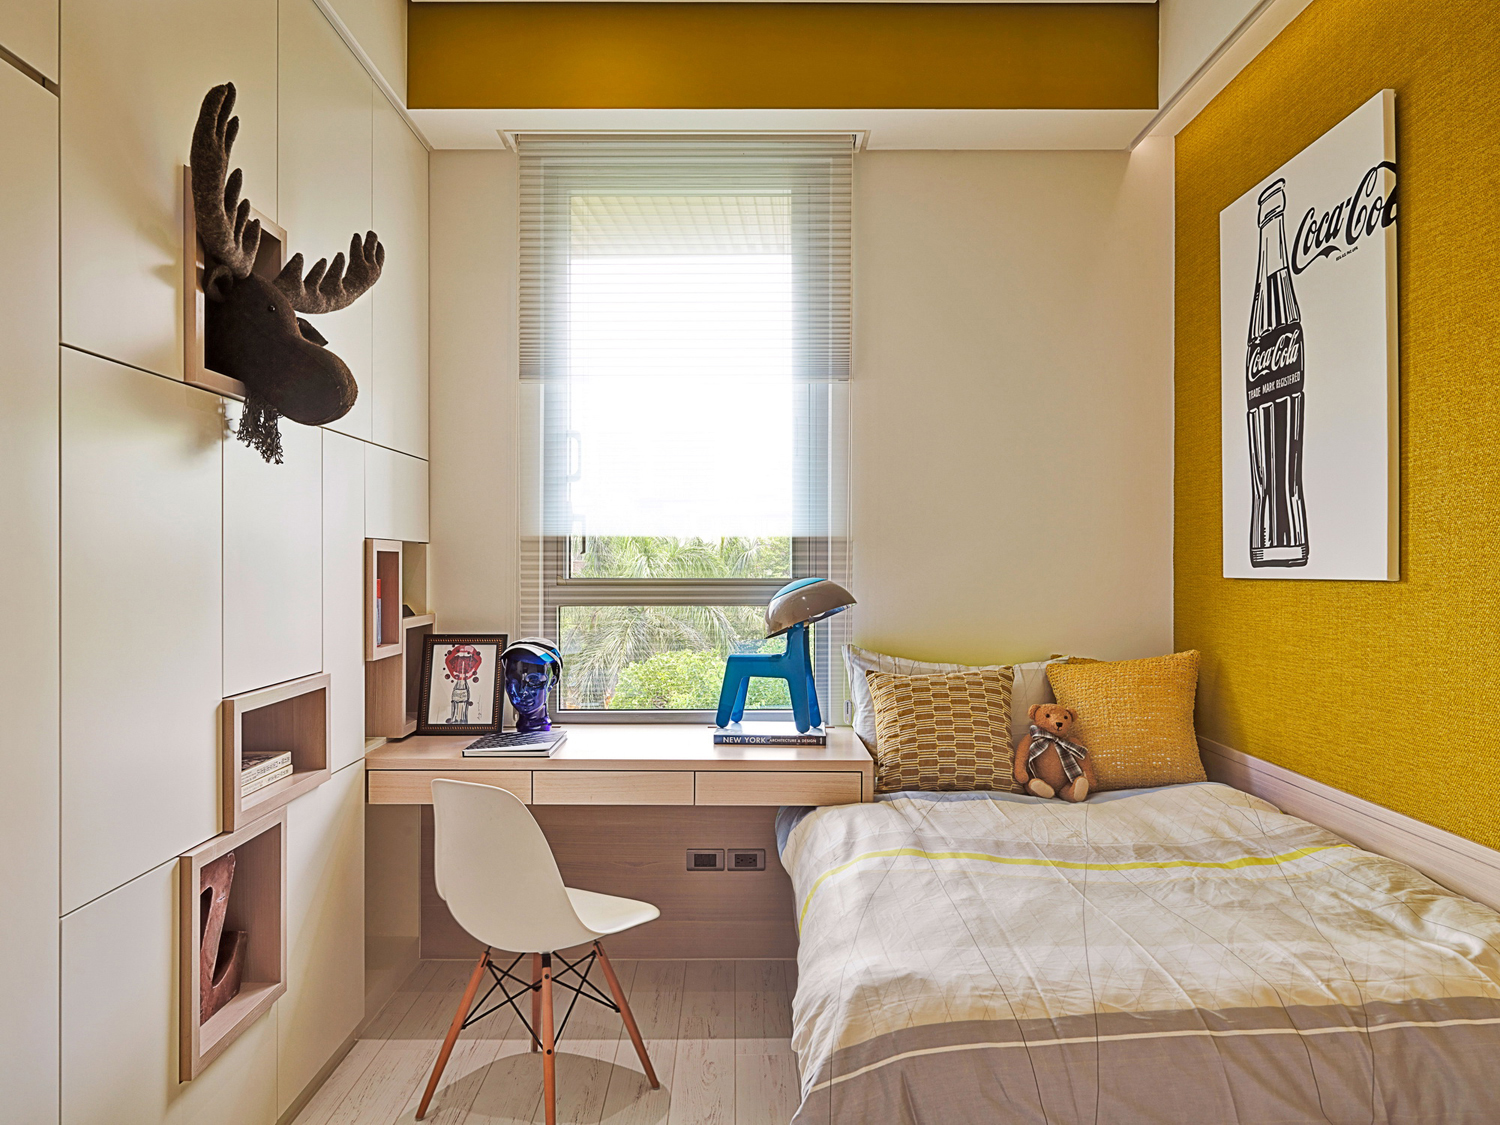 红黑黄组成的强烈的立体主义色块结构的茶几，继续着夏洛特对色彩的无限激情，营造了一种纯粹的抽象的家居印象。
每一个细节，从窗帘到餐椅，都是独具匠心的，形态与空间走势相连，B&B黄色定制的餐椅，以及落地窗帘黄色的呼应，这样形状及色彩的划分给空间带来一种动态的平衡关系，通过错层关系产生一种和谐与韵律。家中的艺术博物馆点缀在各个空间中，由内而外，形成了另一种文化的循环，与居家空间的人本精神暗暗相合，还与远山、屋外的树共生，在此安家，心有所归。